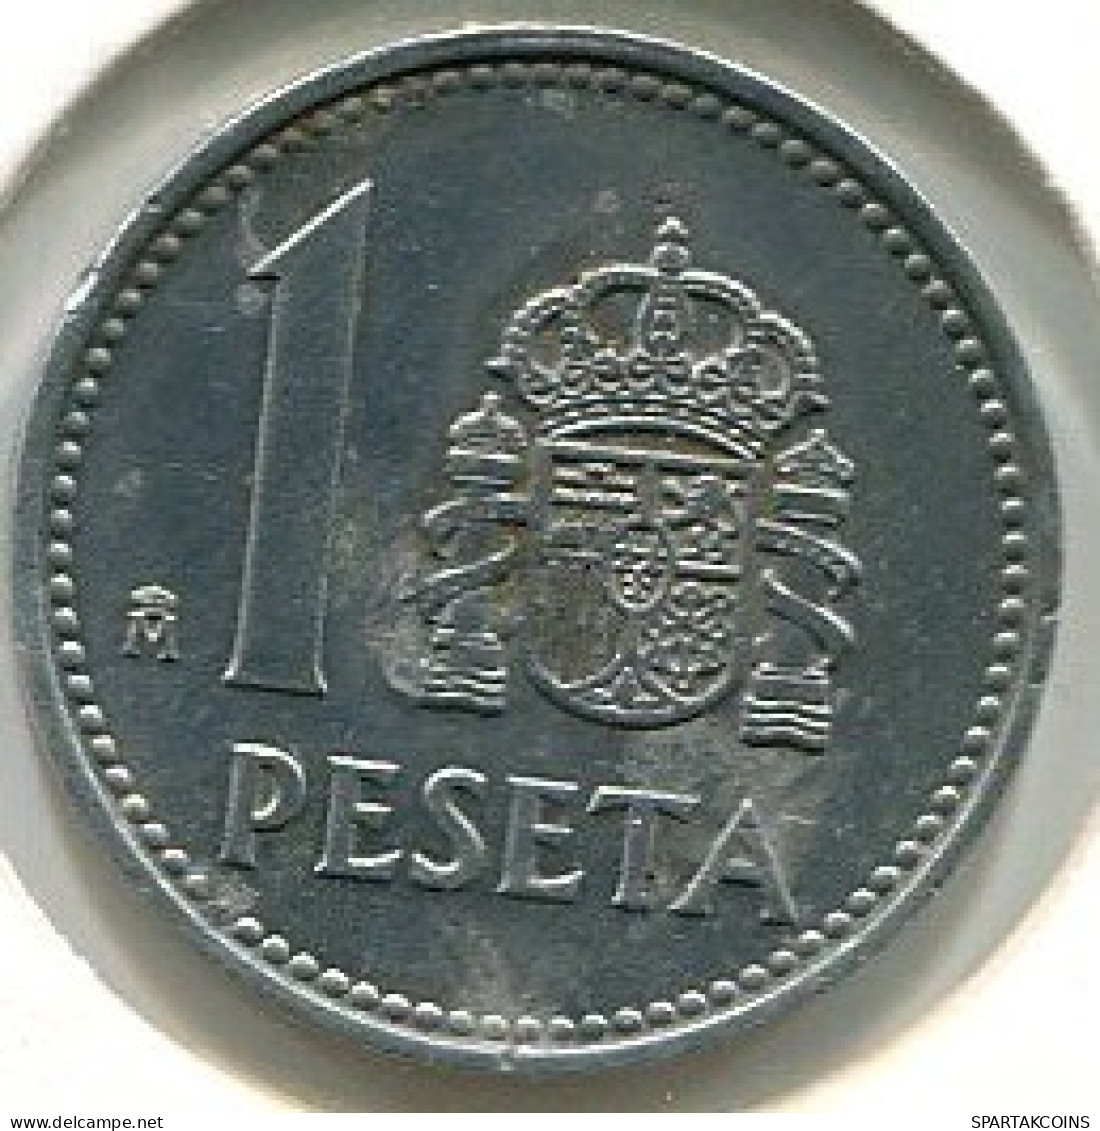 1 PESETA 1983 SPAIN #W10562.2.U.A - 1 Peseta